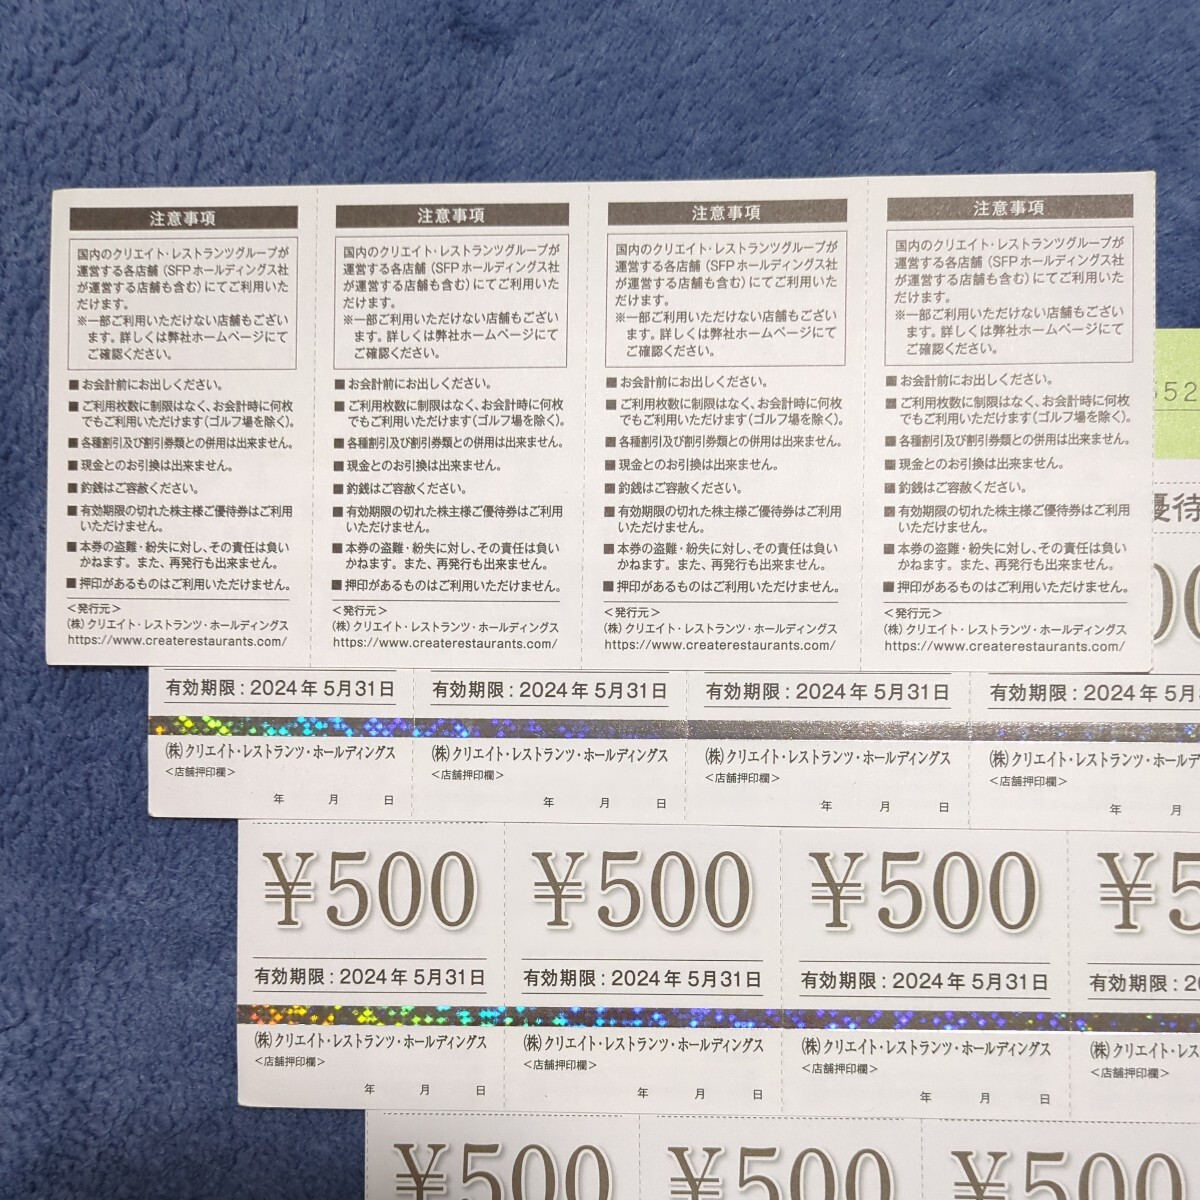 [ бесплатная доставка ]klieito* ресторан tsu* удерживание s акционер пригласительный билет 8,000 иен иметь временные ограничения действия 2024 год 5 месяц 31 до дня 